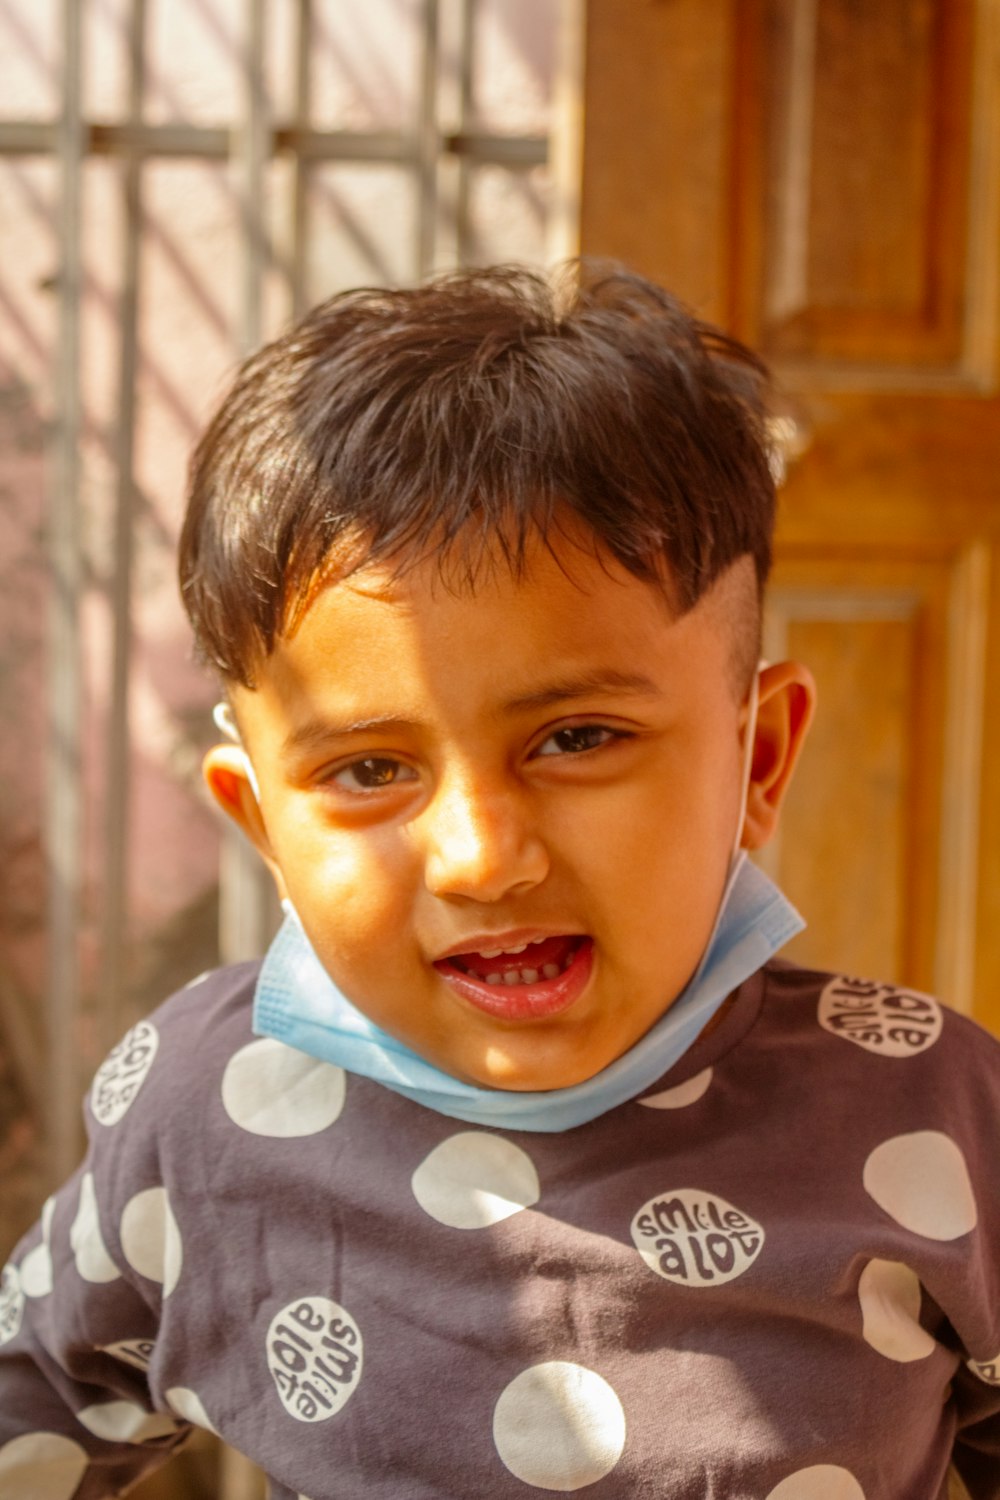 a young boy wearing a polka dot shirt